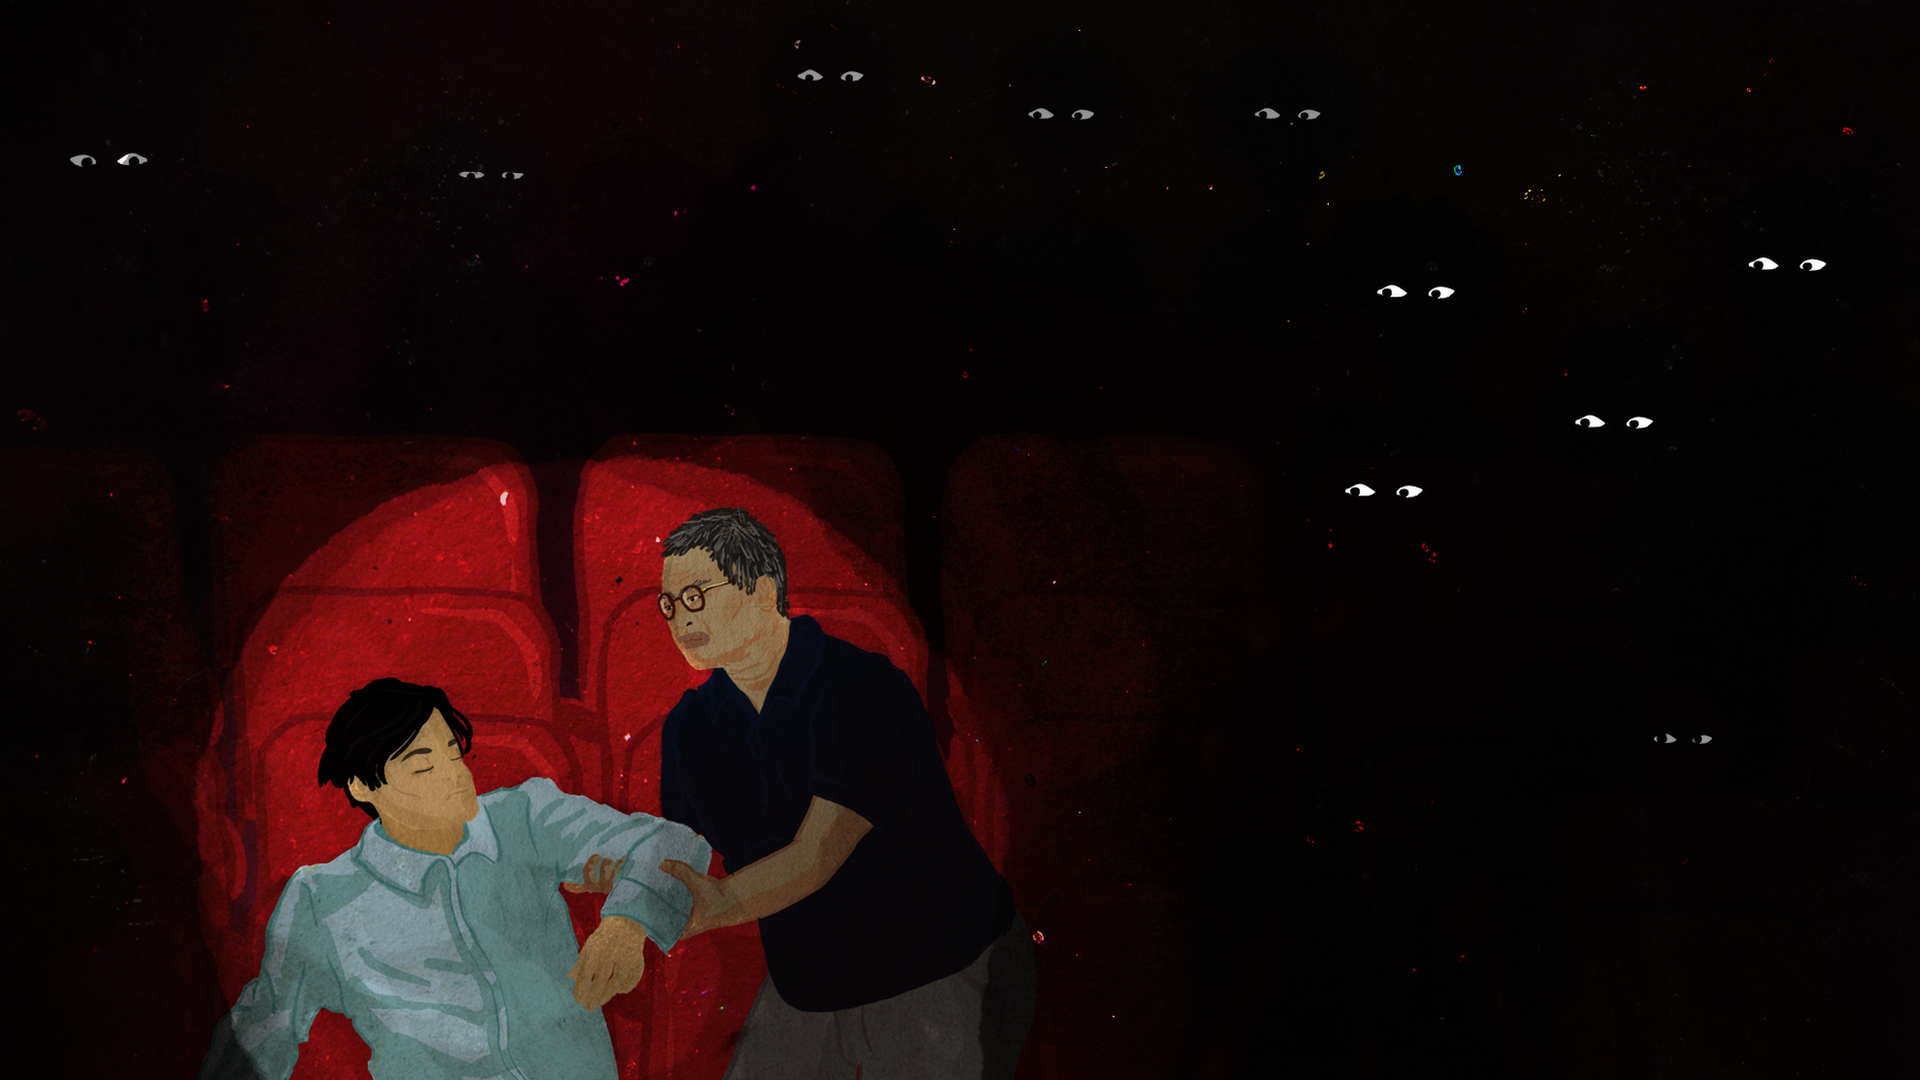 Пакорн заставляет своего сына Данаи встать, пока в кинотеатре звучит королевский гимн.